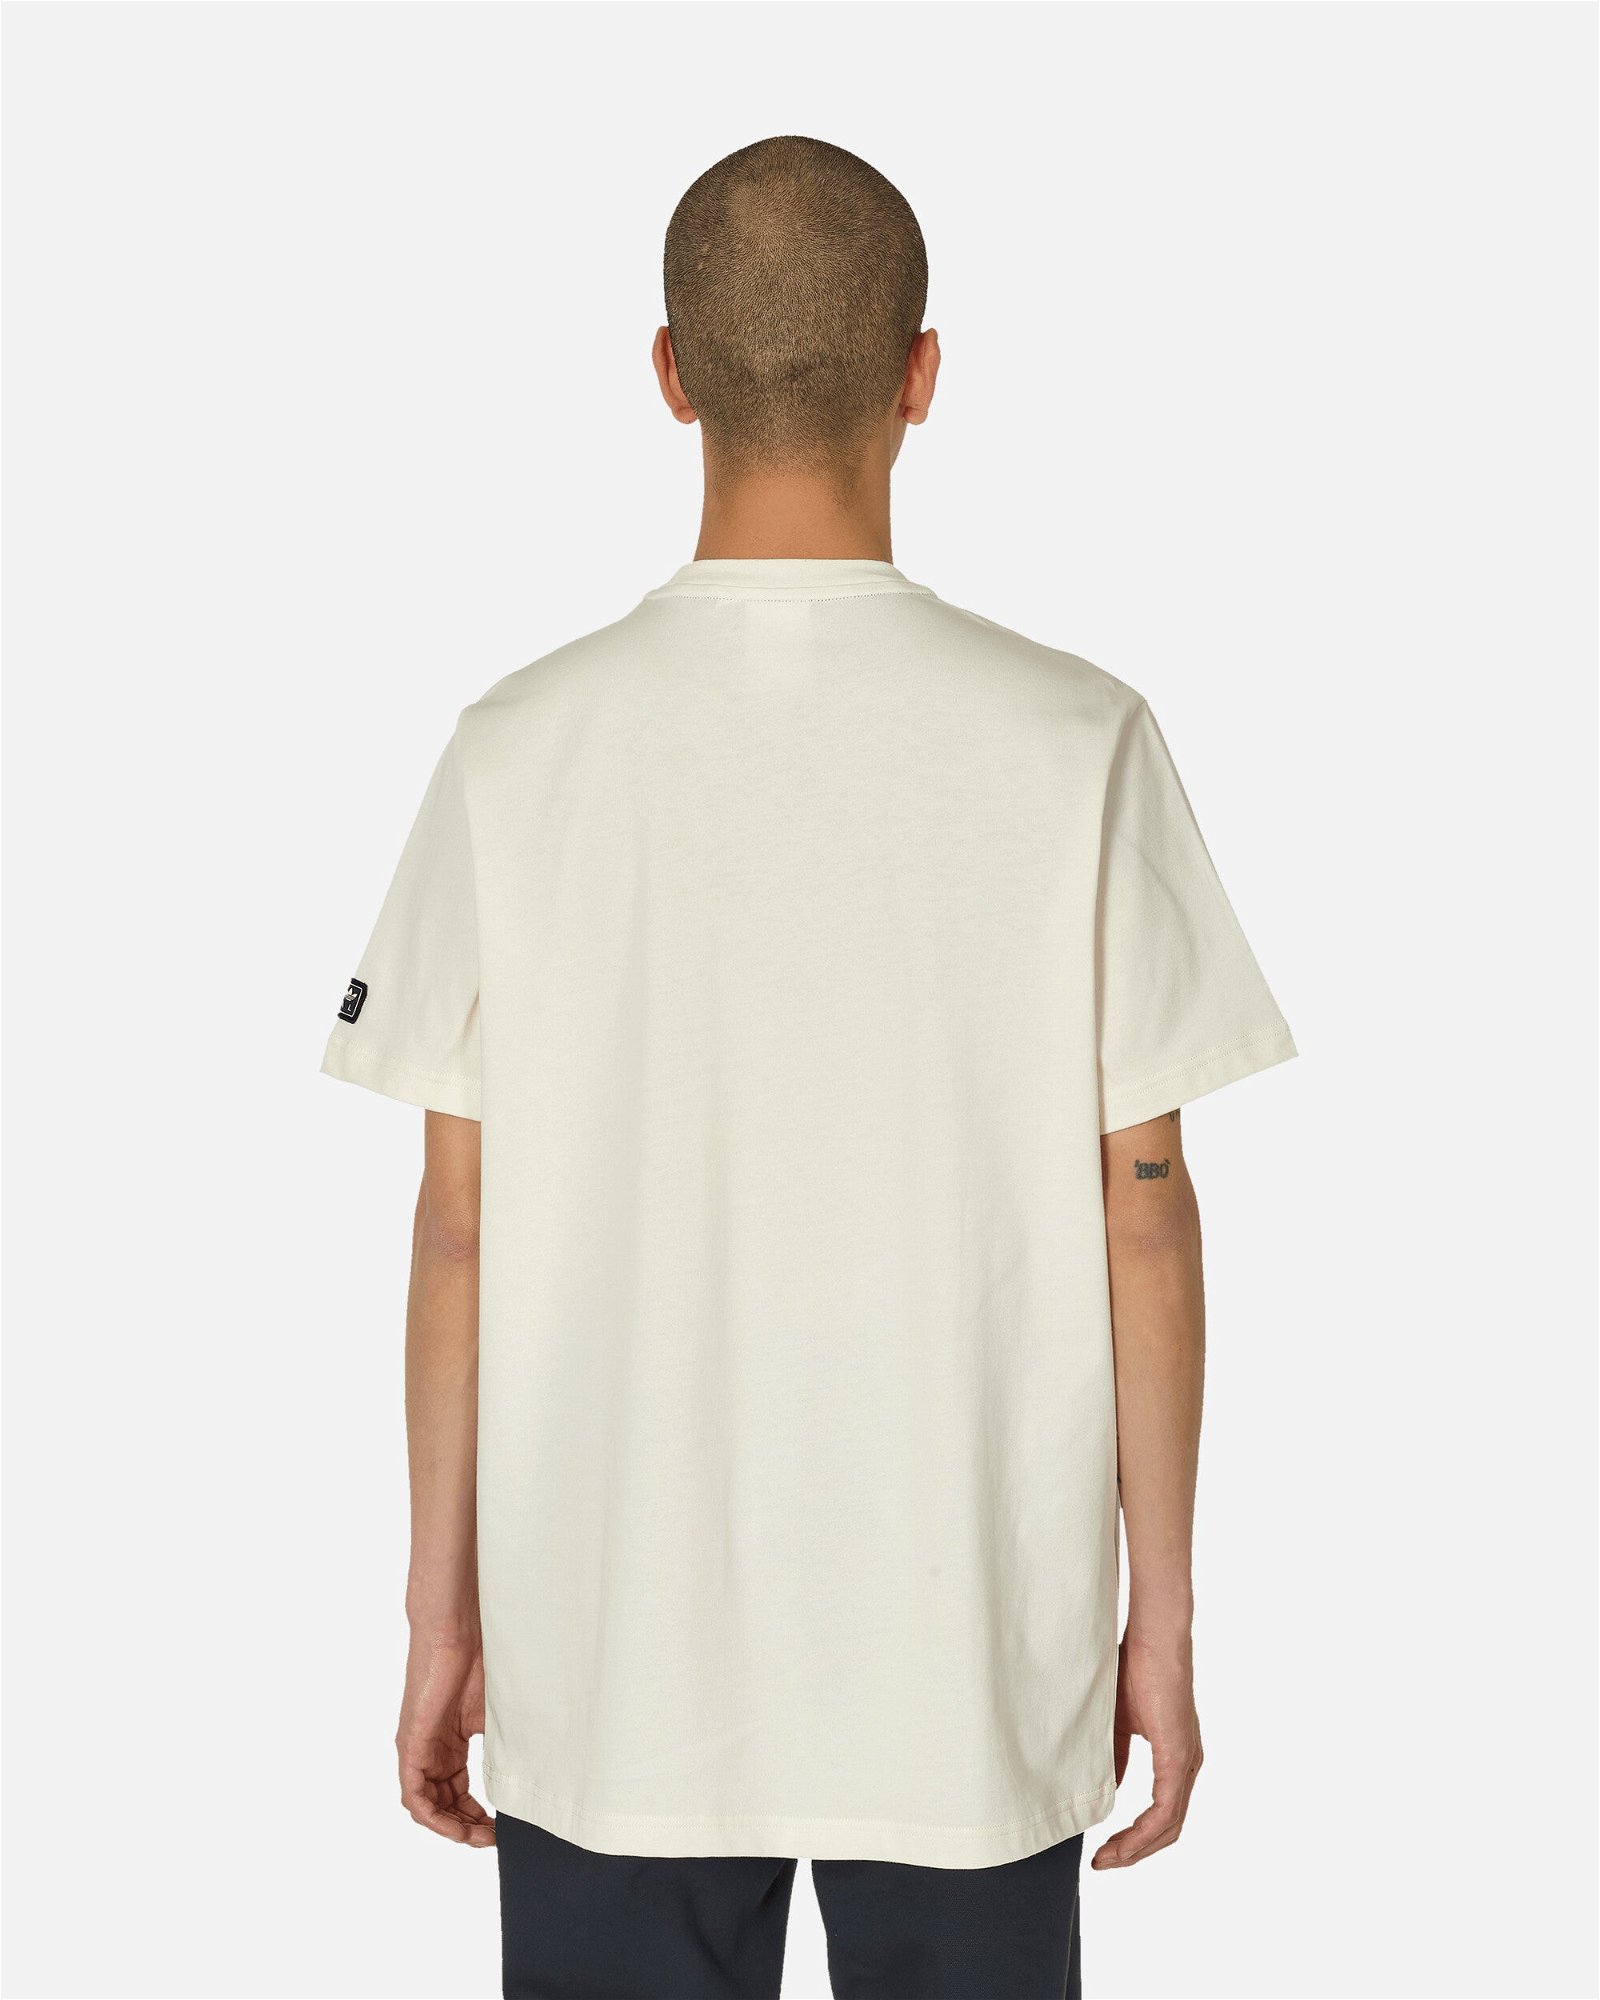 SPZL Mod Trefoil 10 T-Shirt Chalk White